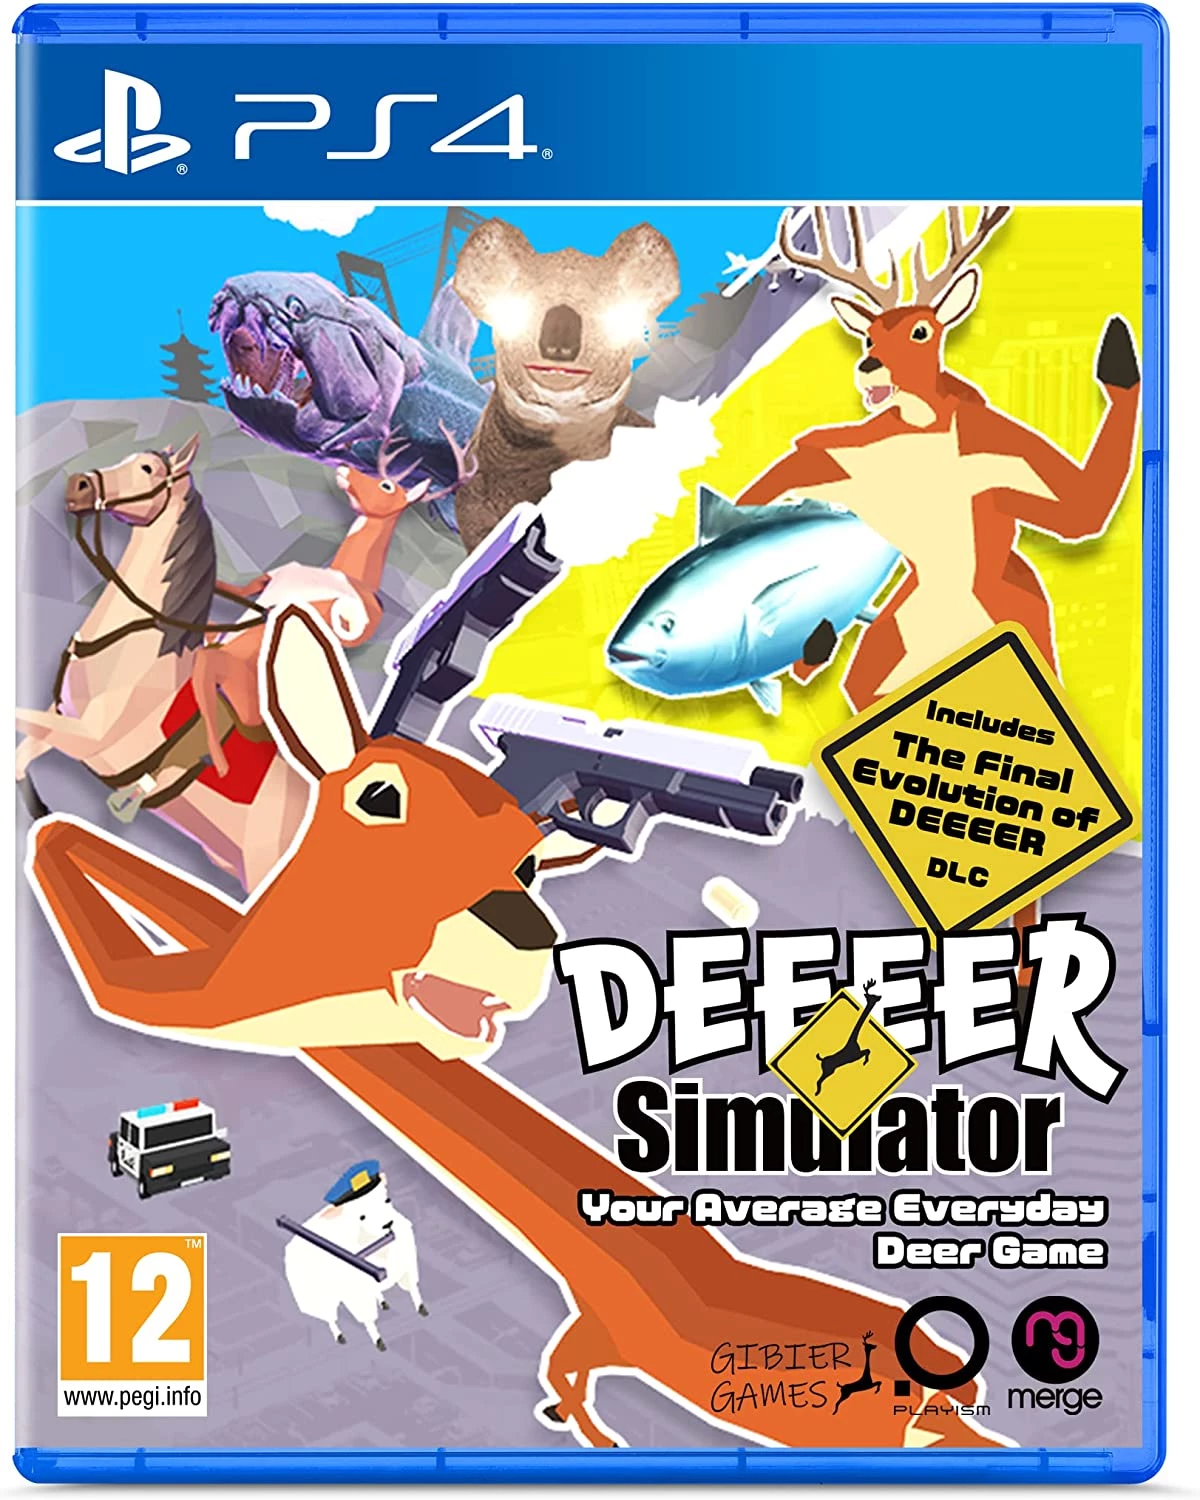 Deeeer Simulator - Your Average Everyday Deer Game (PS4), Merge Games